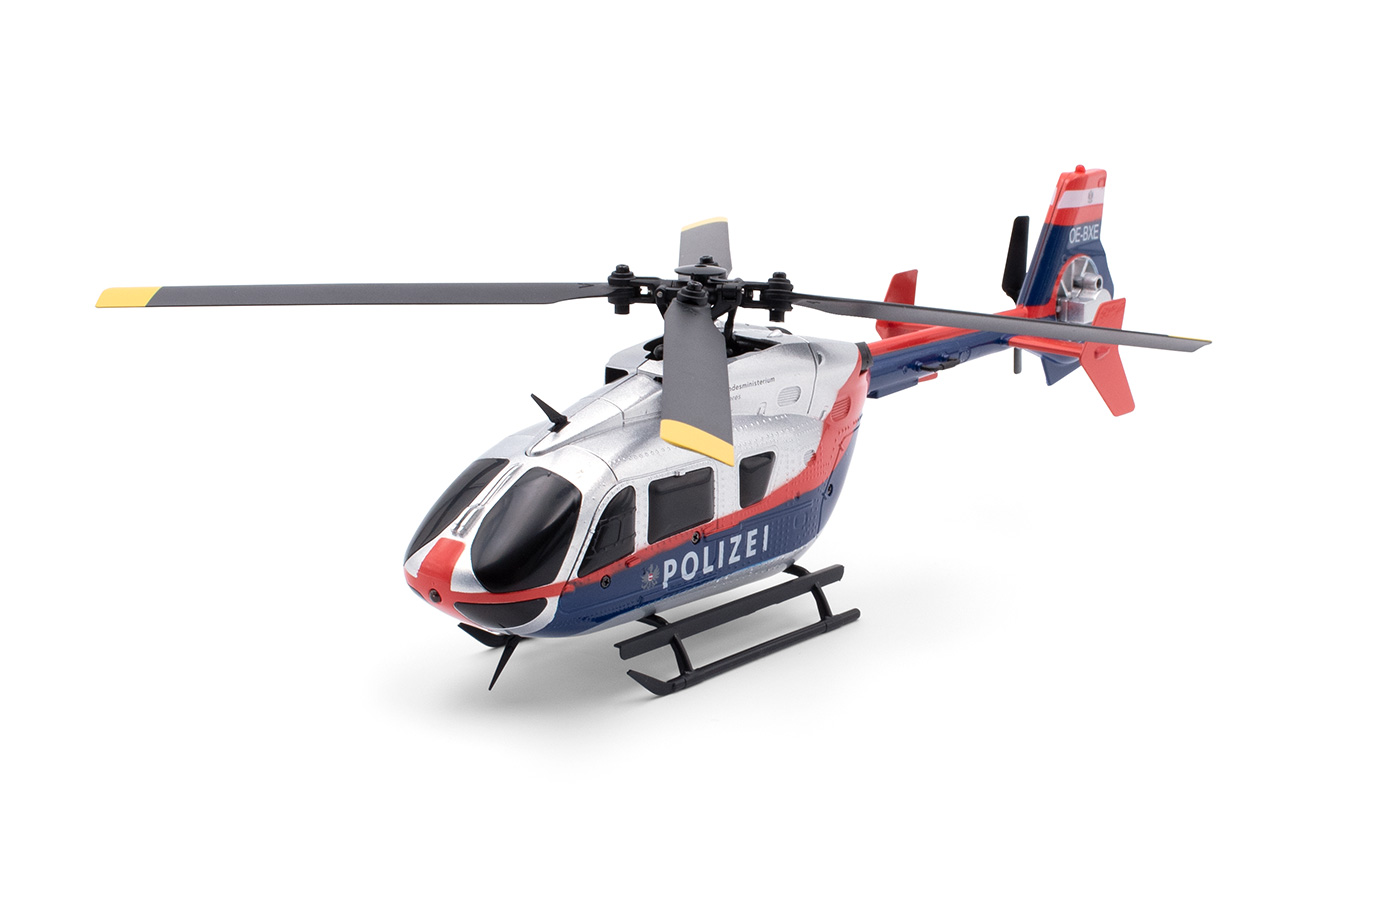 Hélicoptère thermique radiocommandé SDX 50 SWM KIT - Scientific-MHD